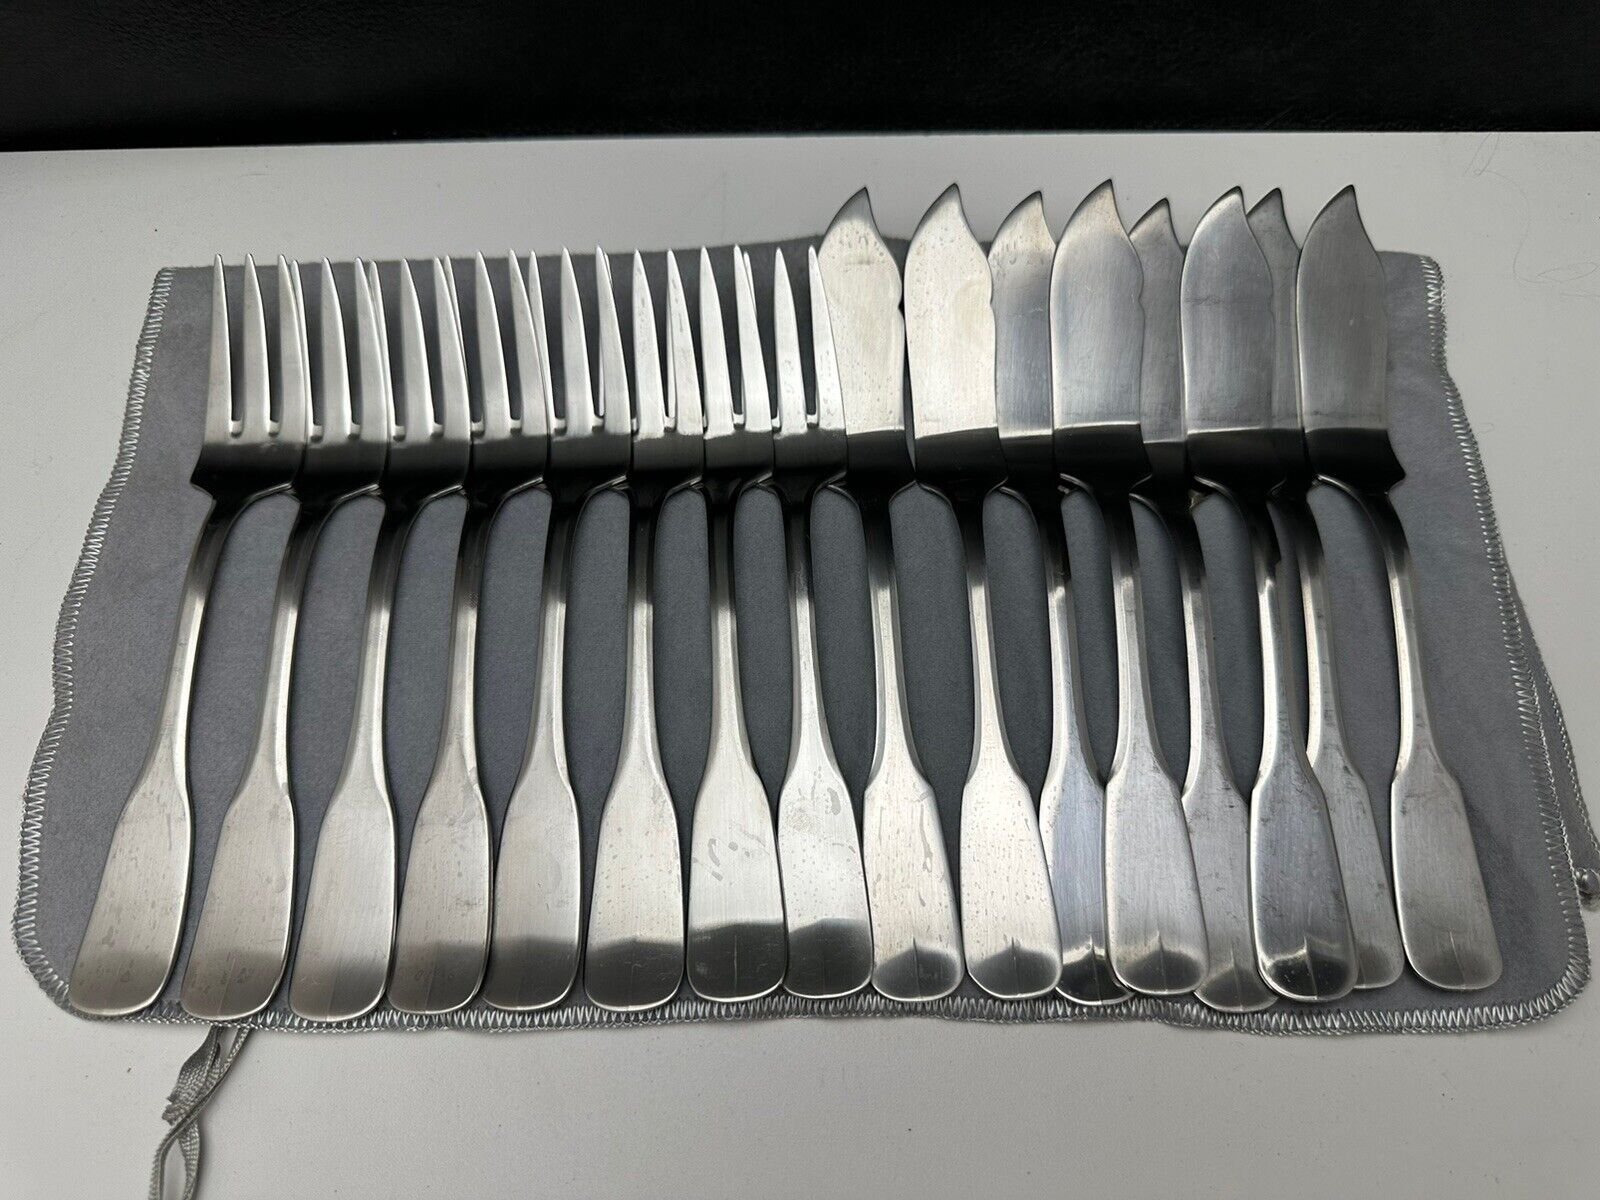 Guy Degrenne Vieux Paris Salad / Fish Forks & Knives Service for 8